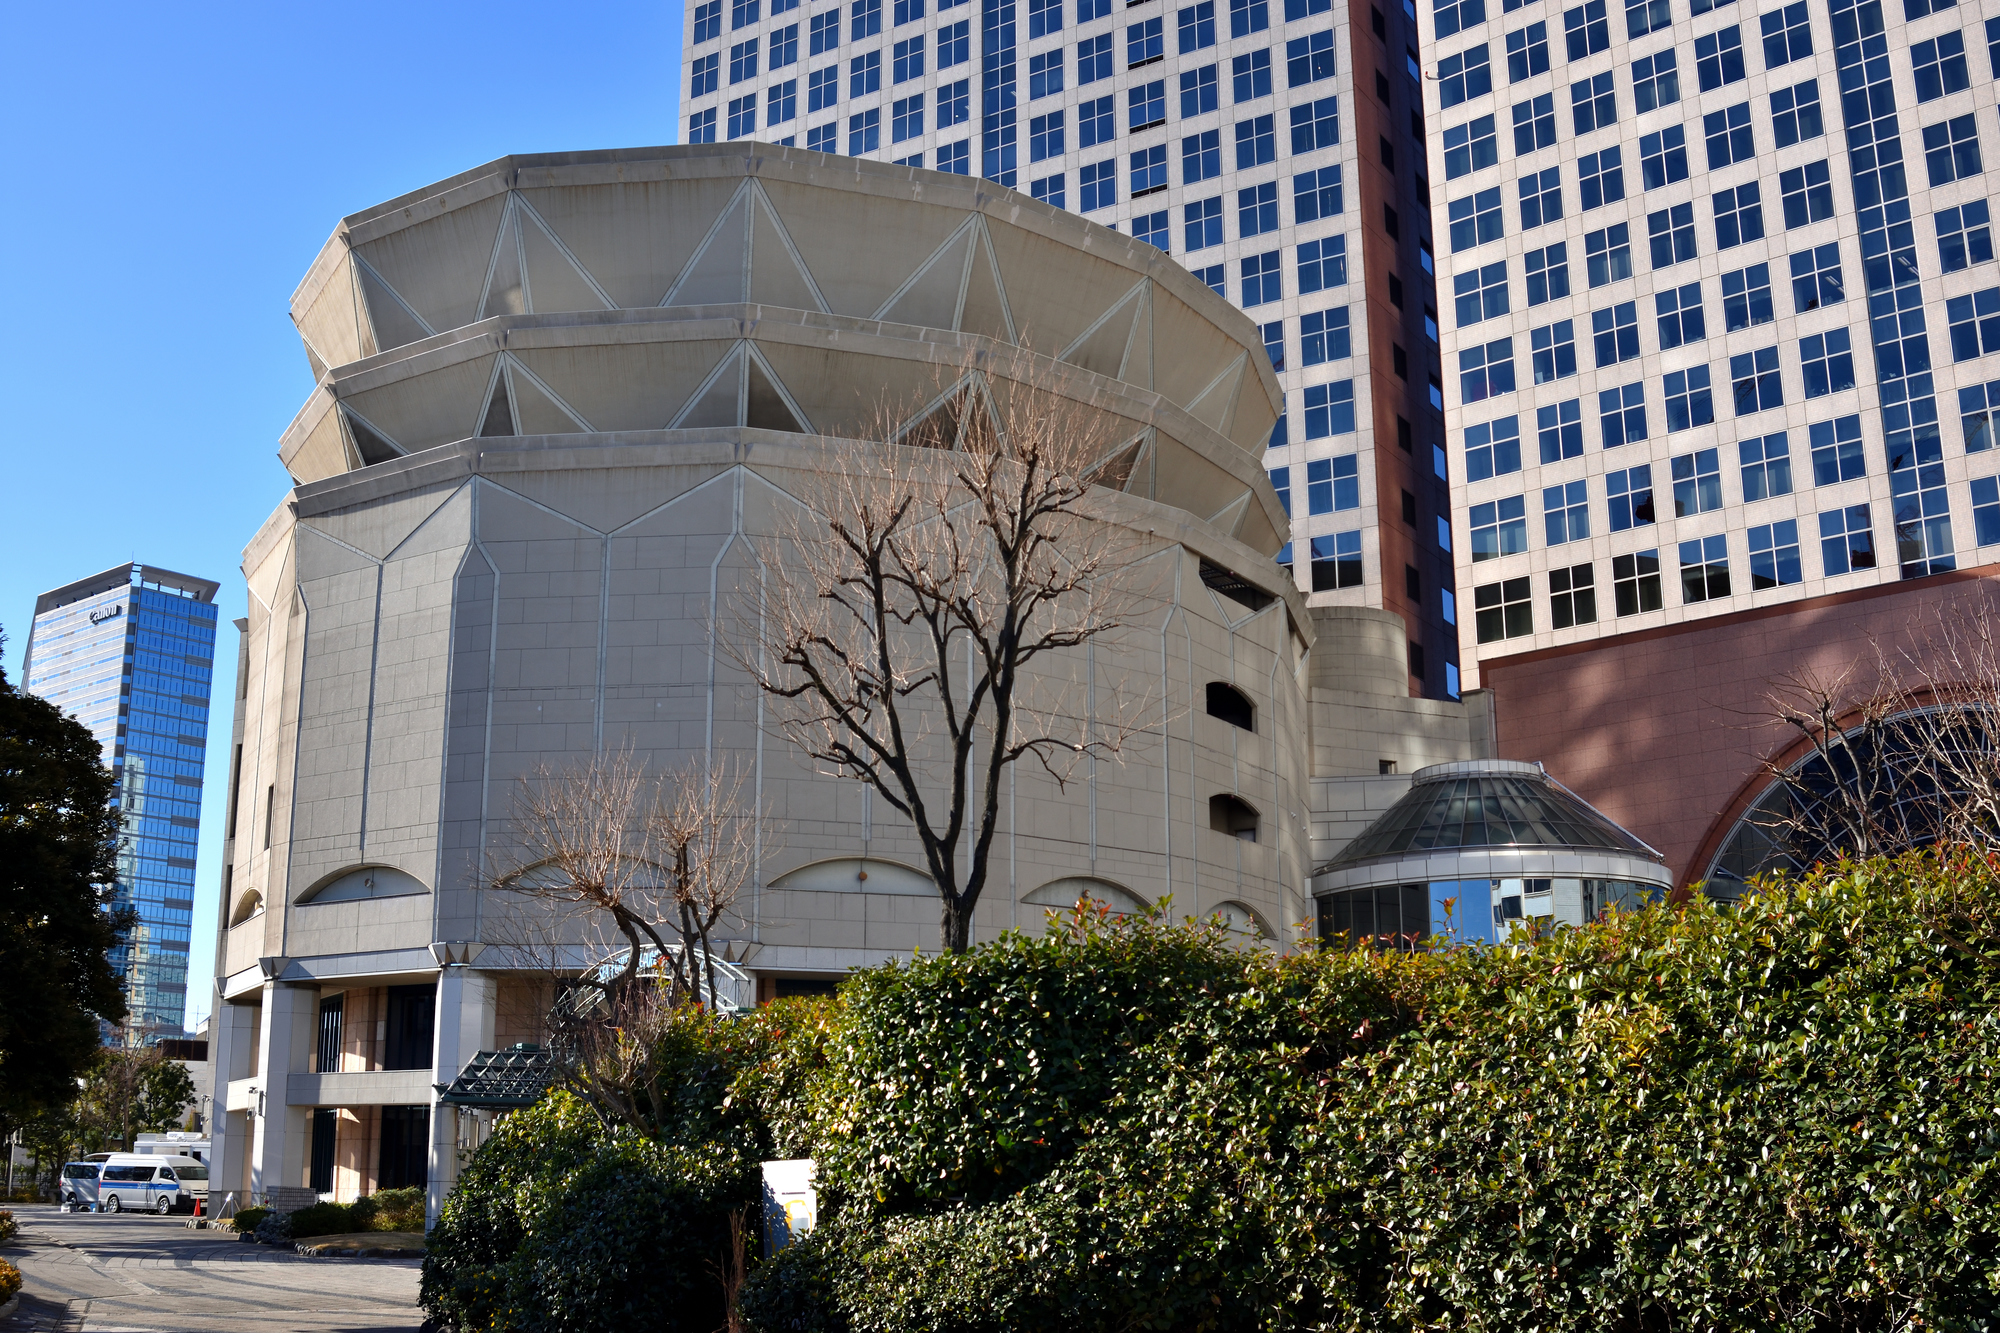 銀河劇場 京都劇場 Tdcホール 2 5次元舞台 ミュージカル作品とベストマッチしていた 最高の劇場